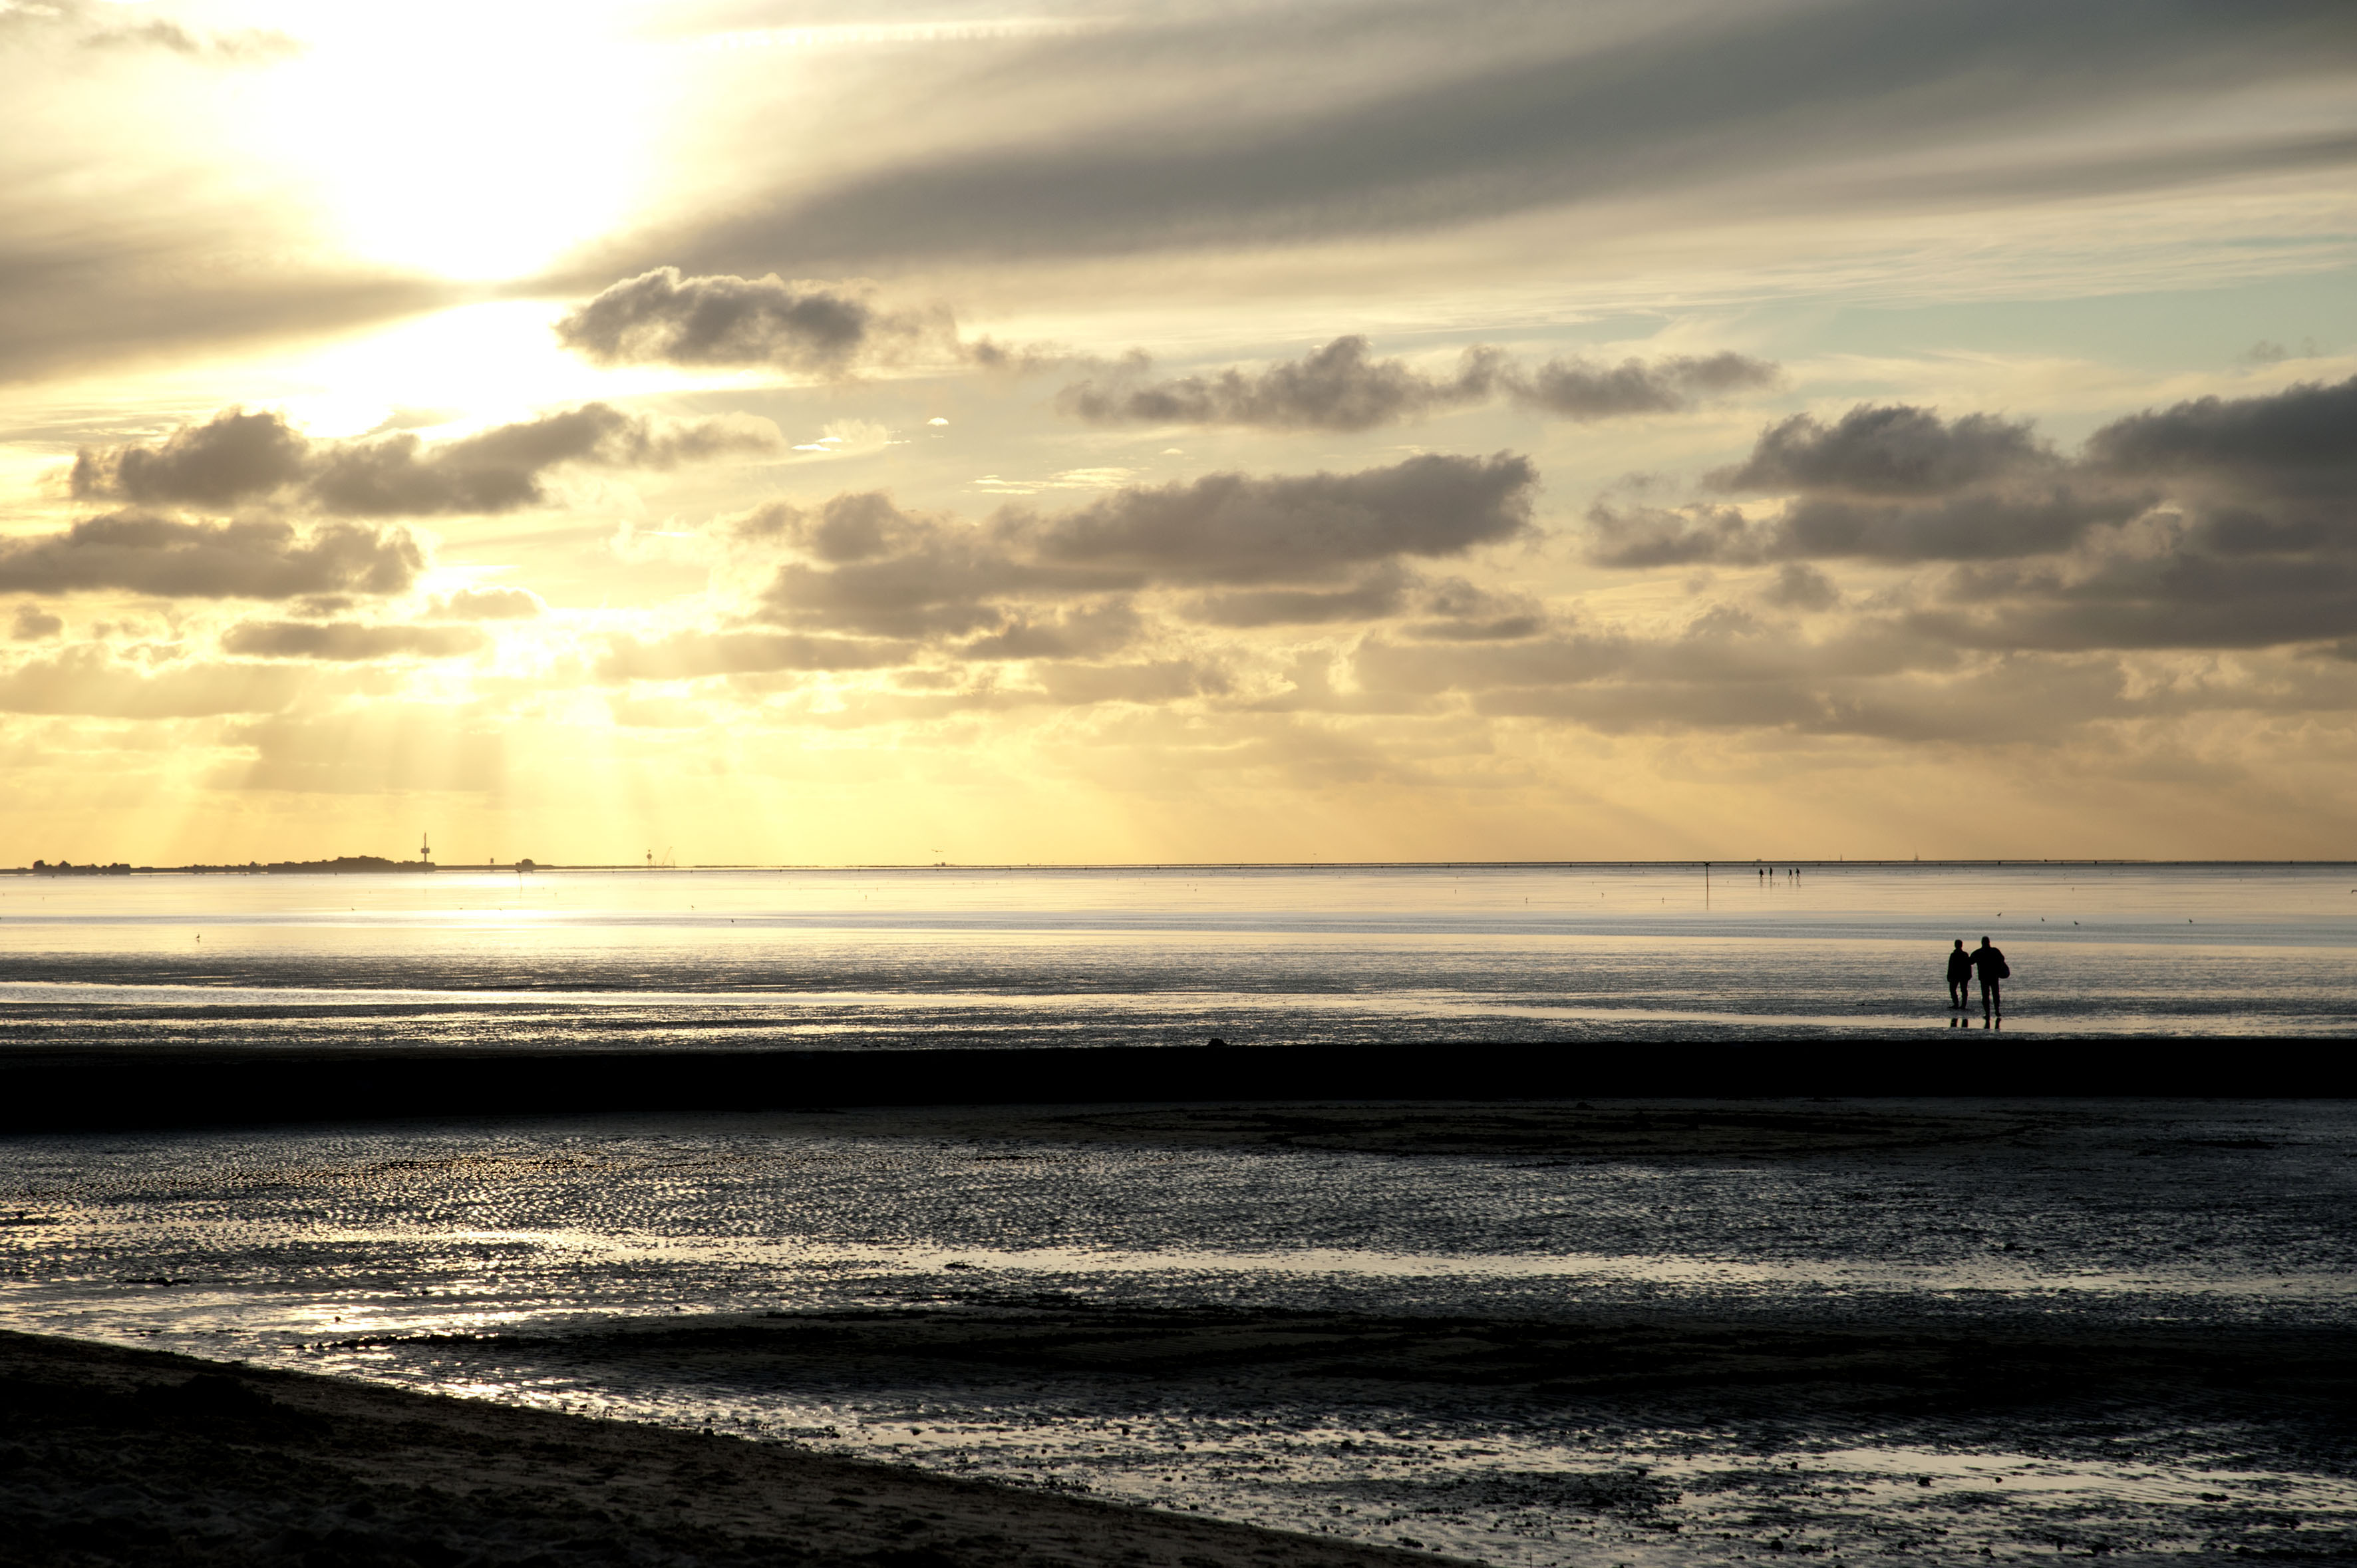 Sonnenuntergang am Wattenmeer bei Cuxhaven.
